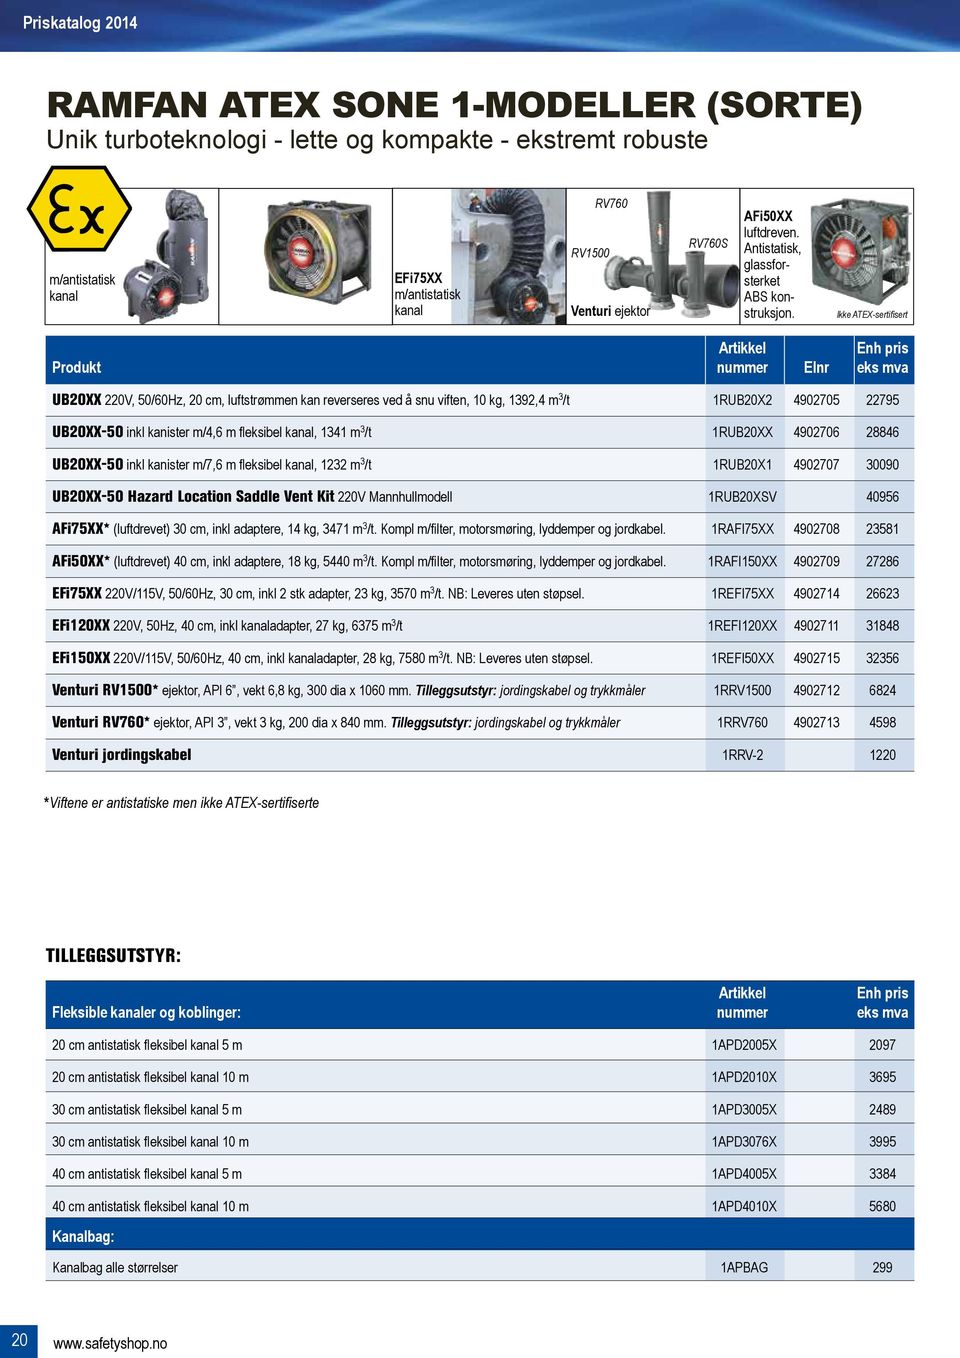 Ikke ATEX-sertifisert Artikkel enh pris Produkt nummer Elnr eks mva UB20XX 220V, 50/60Hz, 20 cm, luftstrømmen kan reverseres ved å snu viften, 10 kg, 1392,4 m 3 /t 1RUB20X2 4902705 22795 UB20XX-50